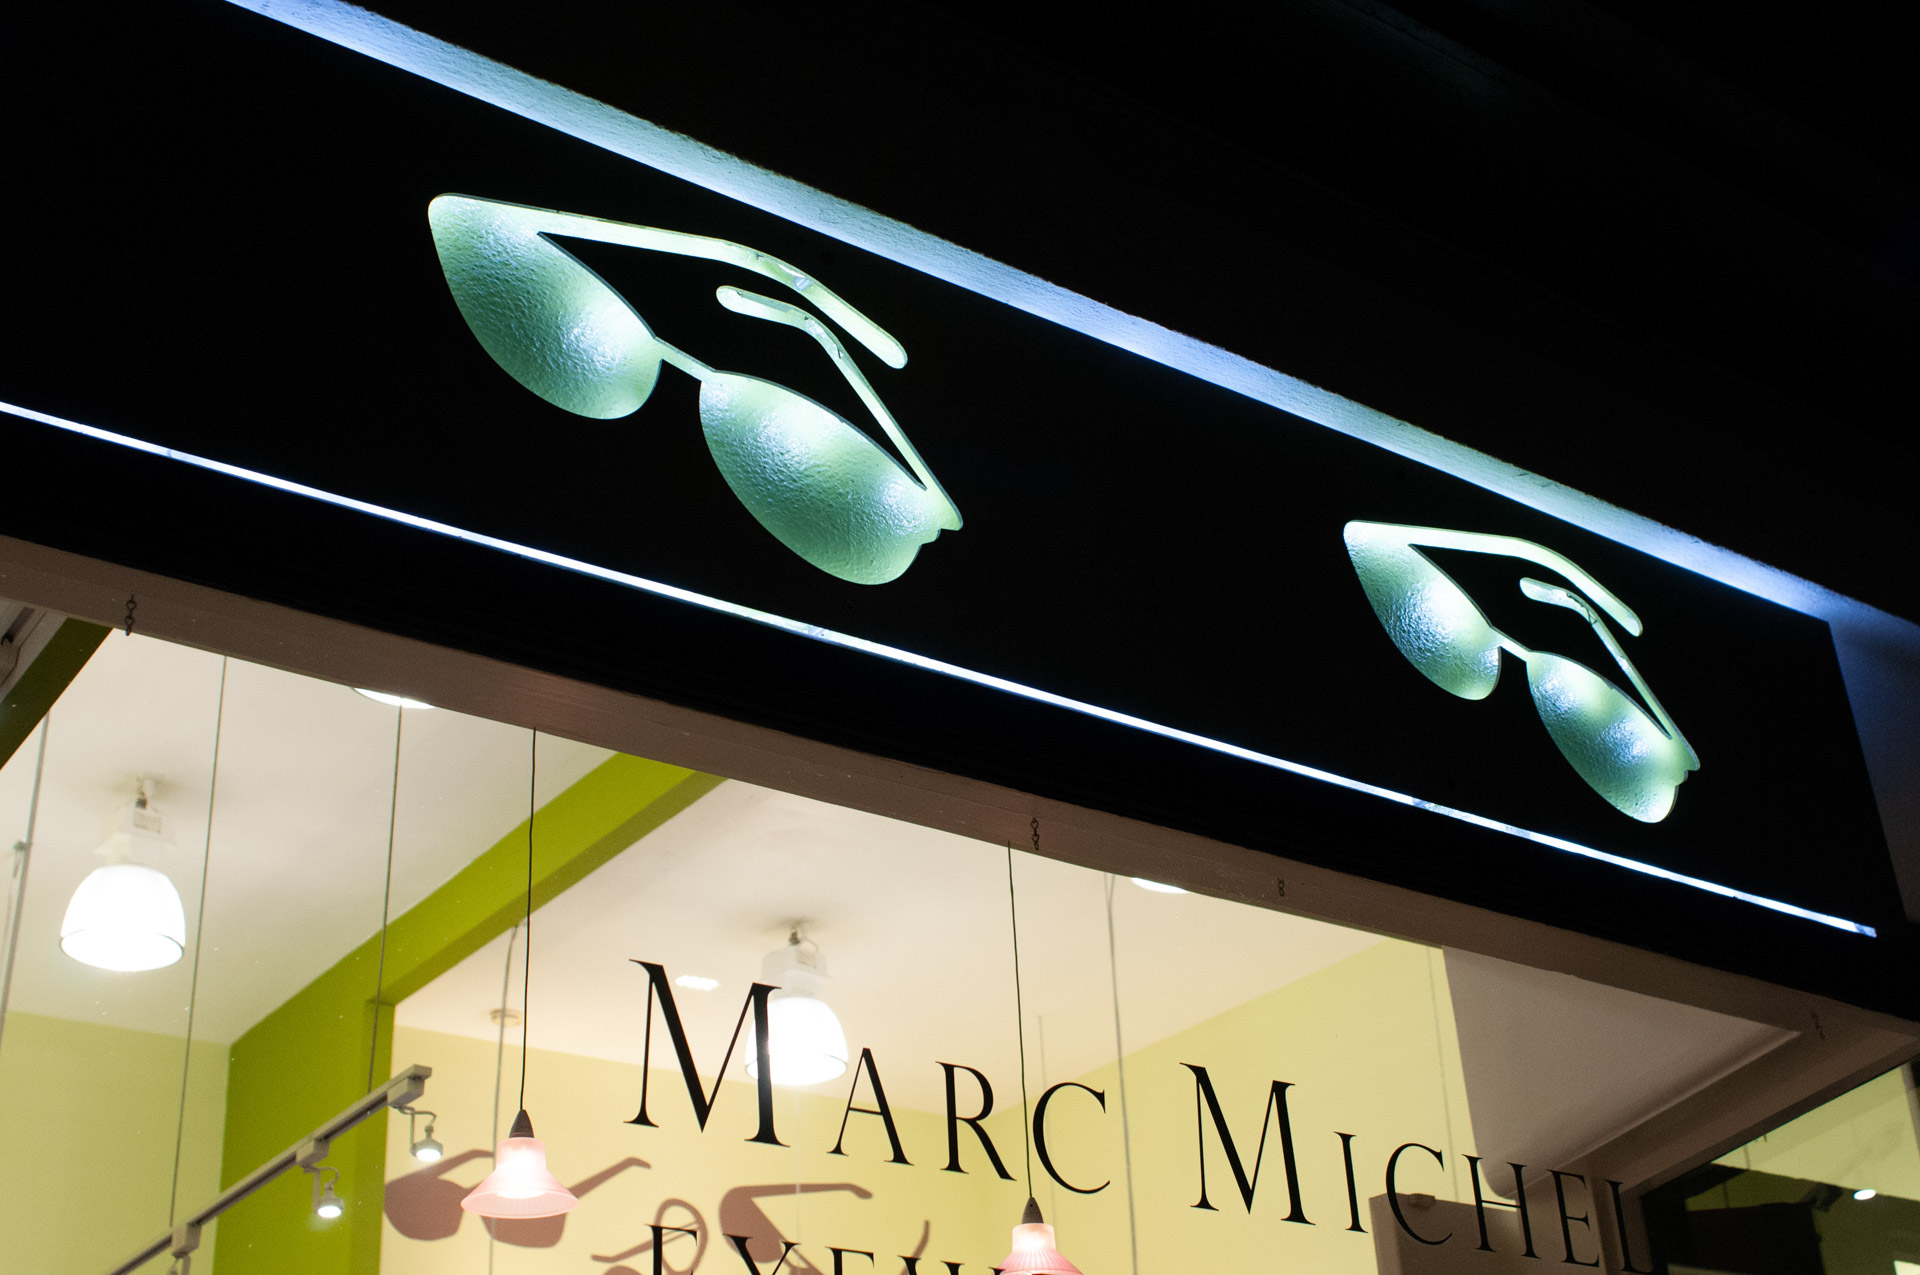 Marc Michel Eyewear exterior banner